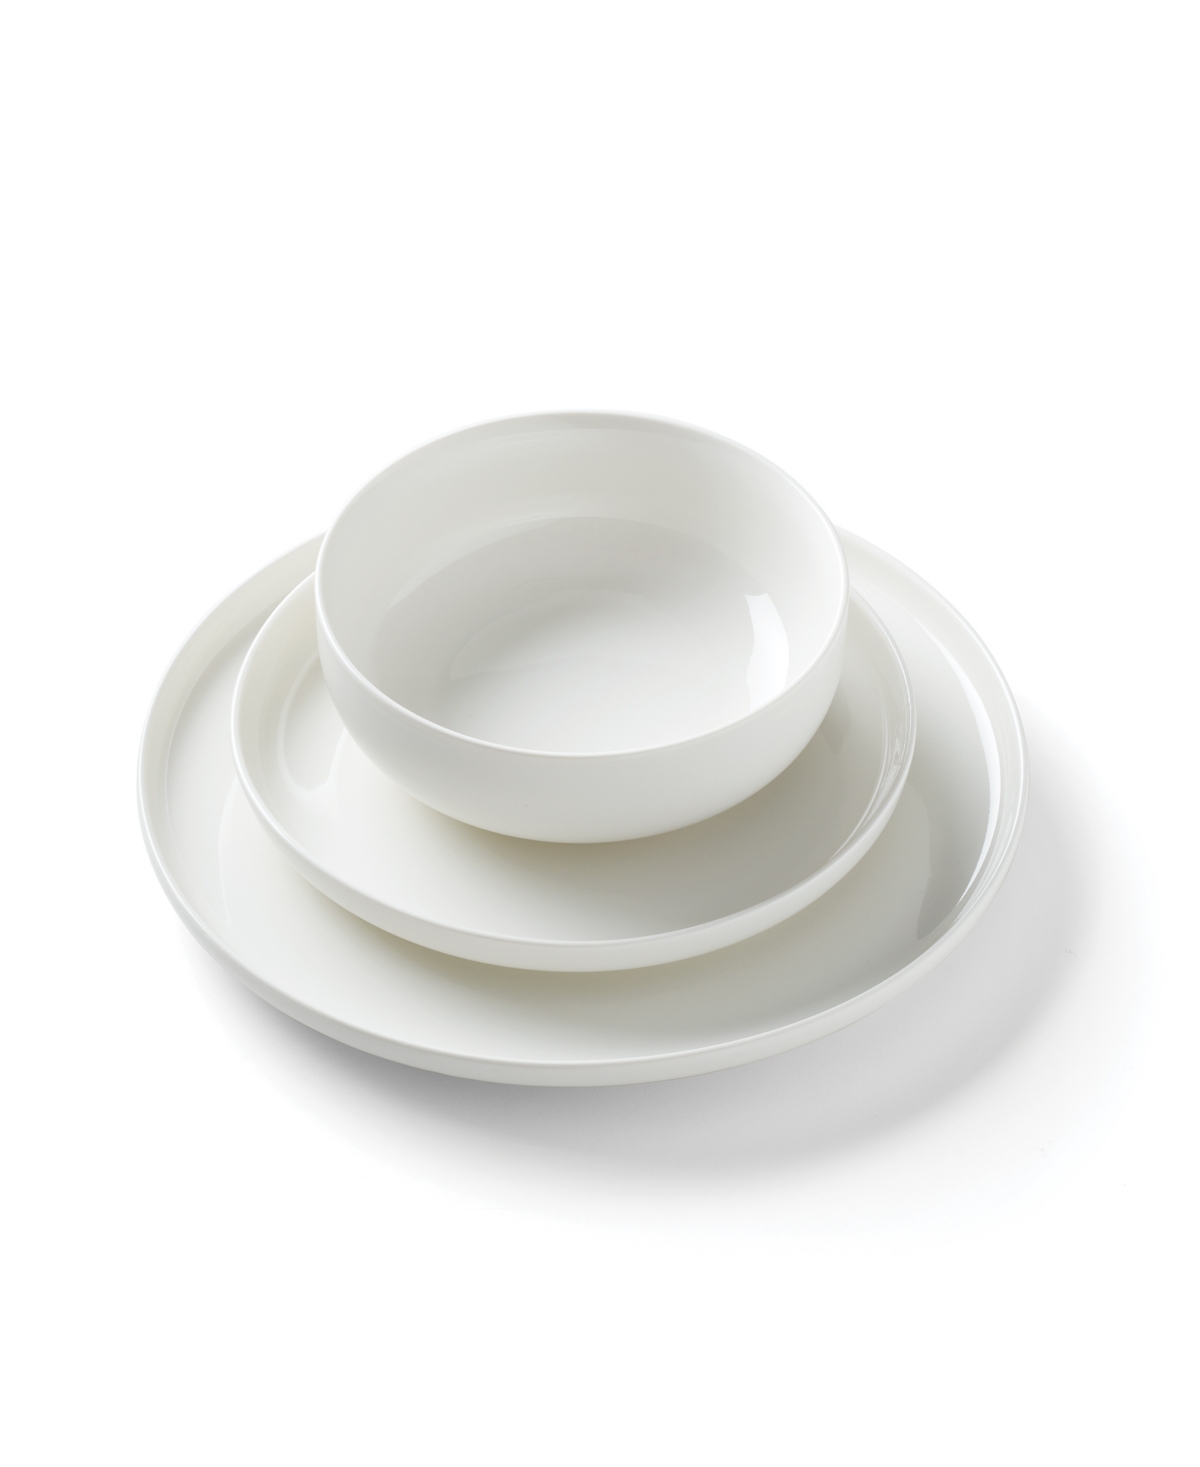 Oneida Ridge 12-Piece Dinnerware Set - White